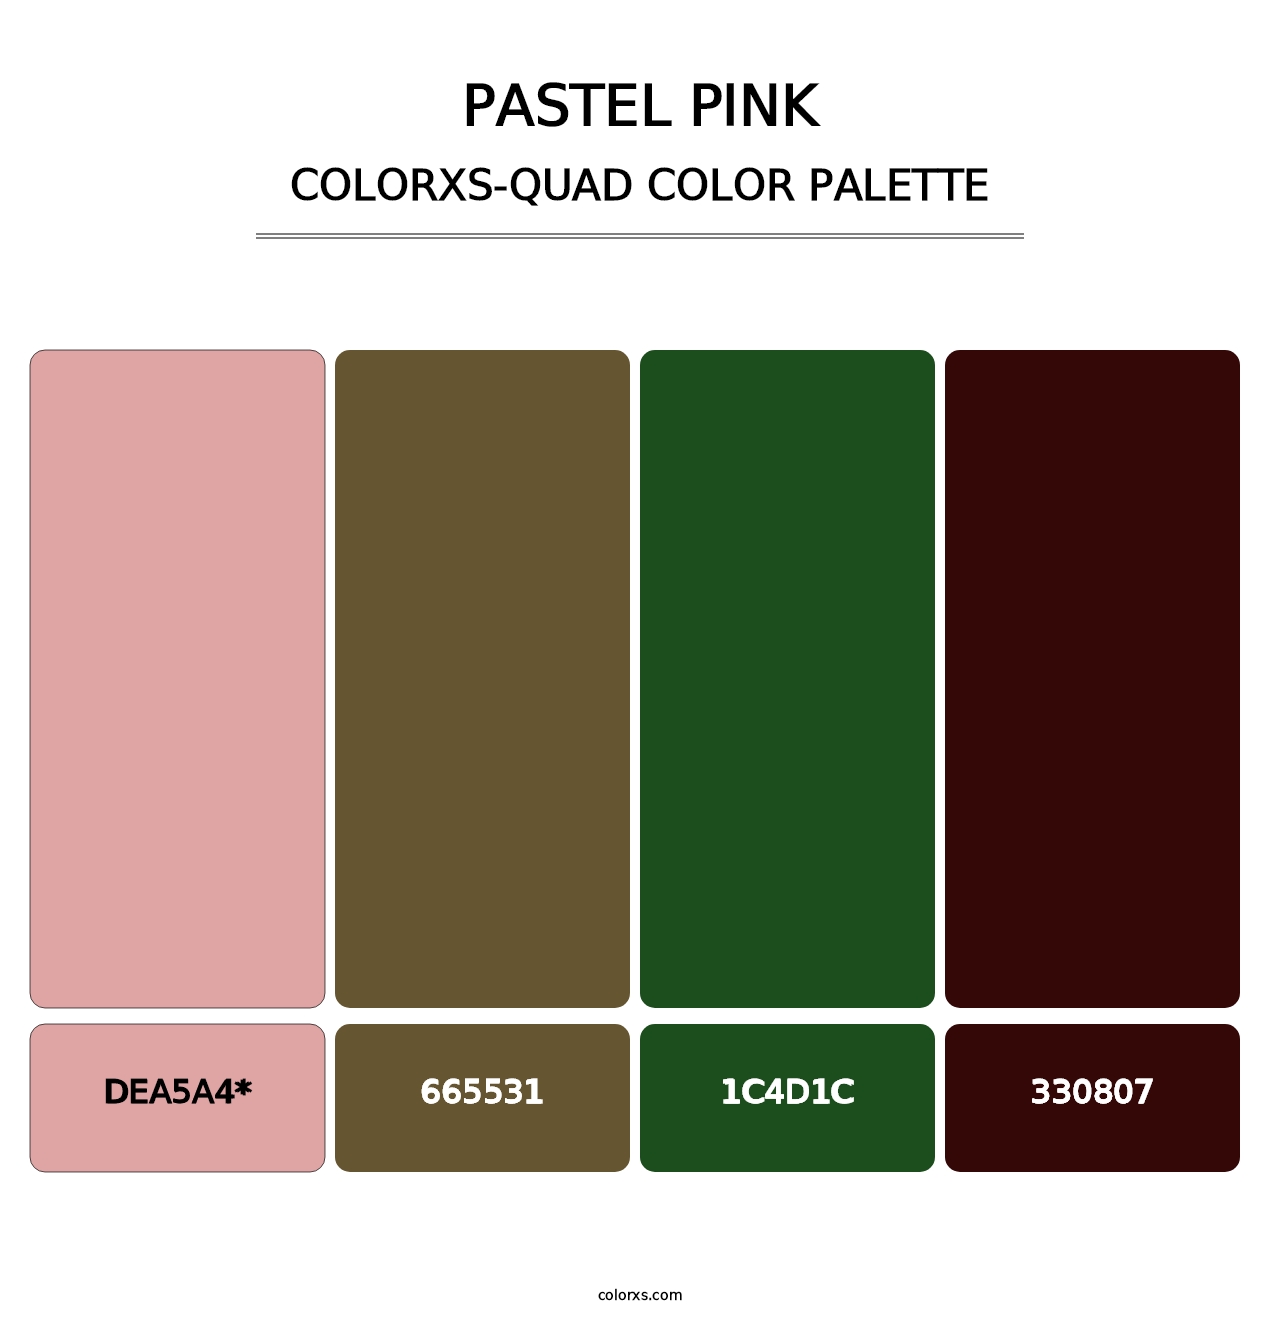 Pastel Pink - Colorxs Quad Palette